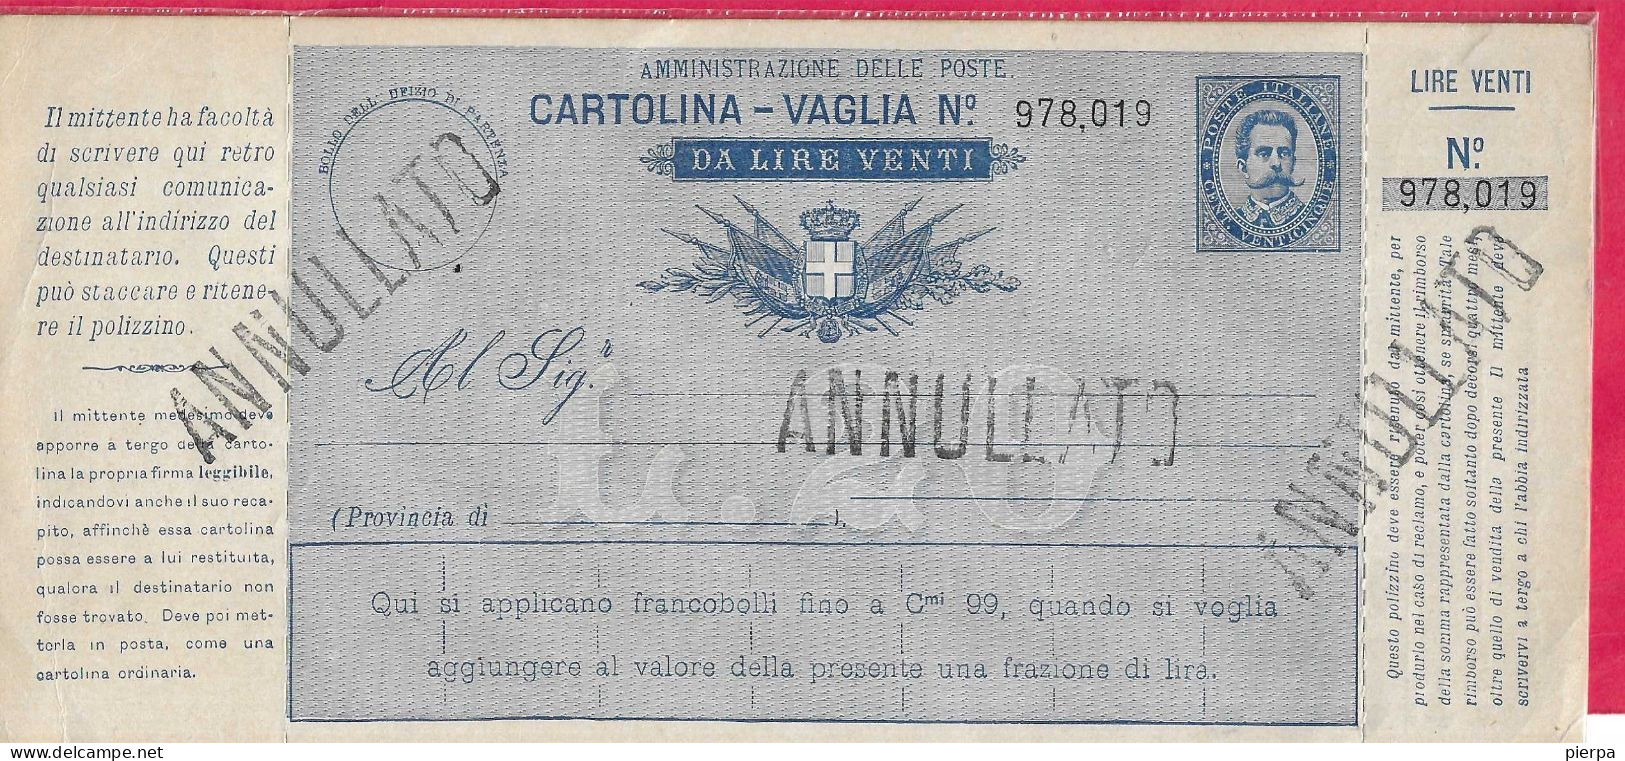 INTERO CARTOLINA-VAGLIA UMBERTO C.25 DA LIRE 20 (CAT. INT. 9A)  NUOVA - TIMBRO ANNULLATO - Stamped Stationery